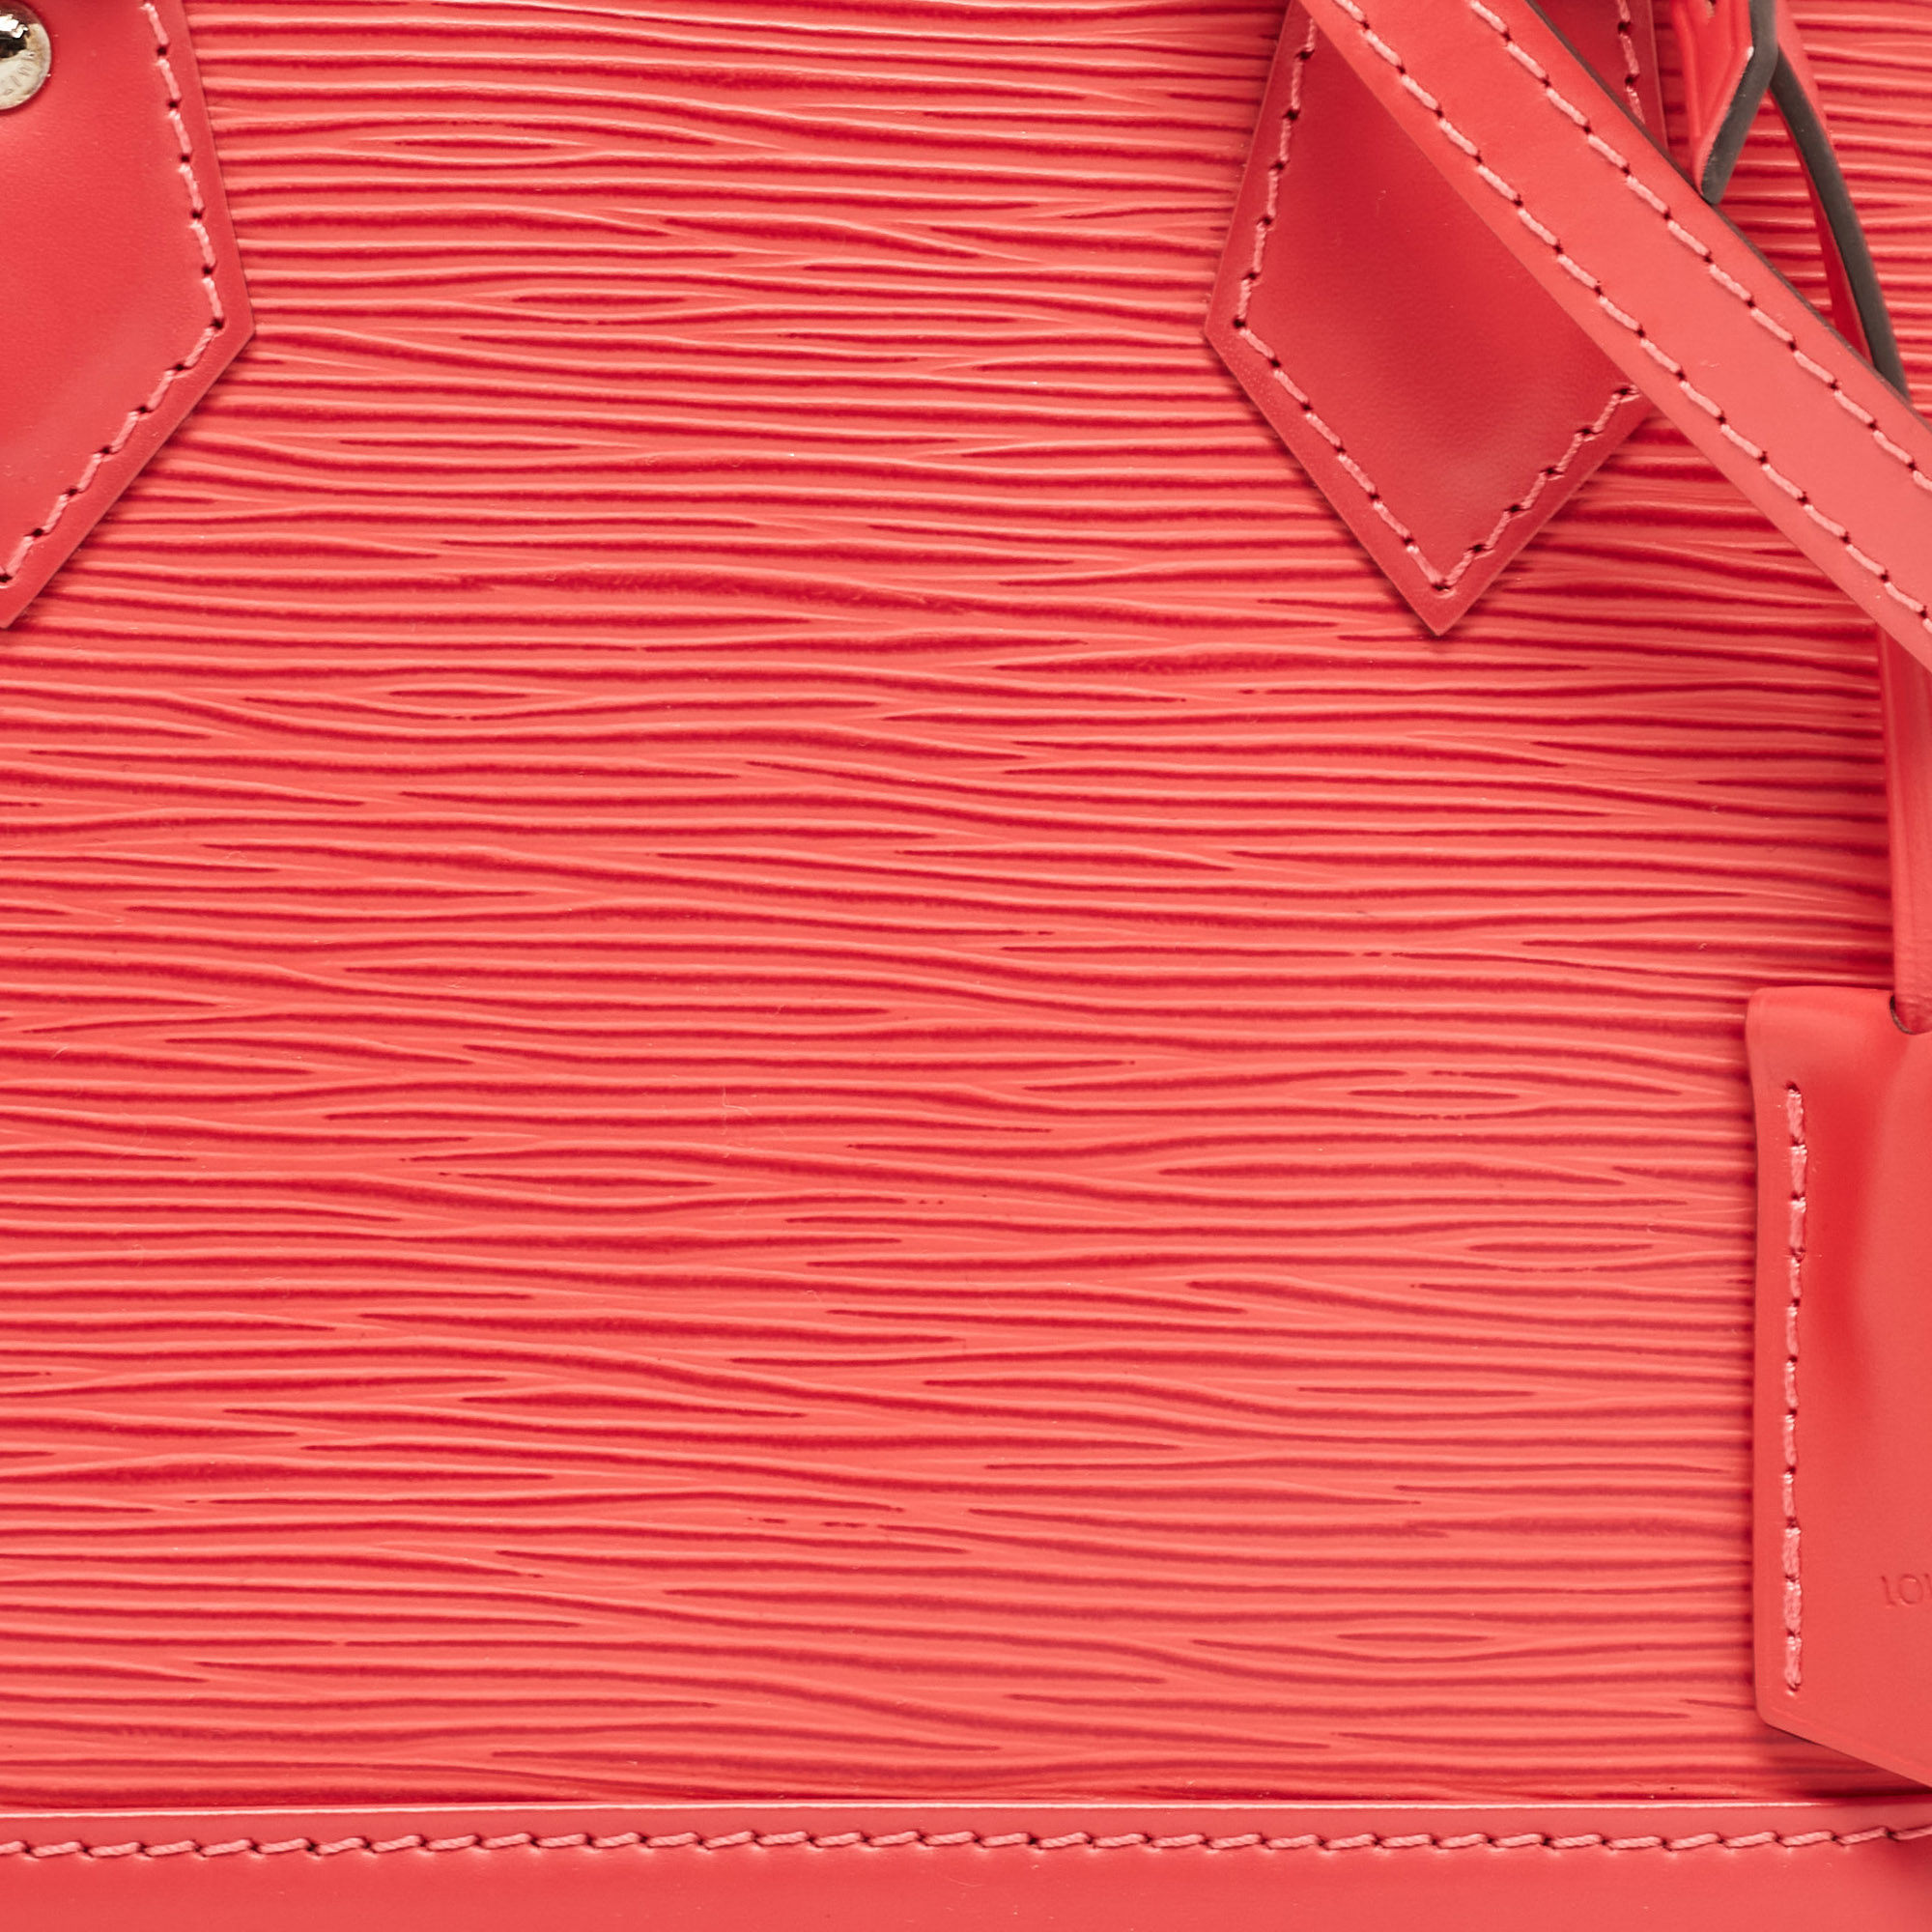 Louis Vuitton Pivoine Epi Leather Alma BB Bag